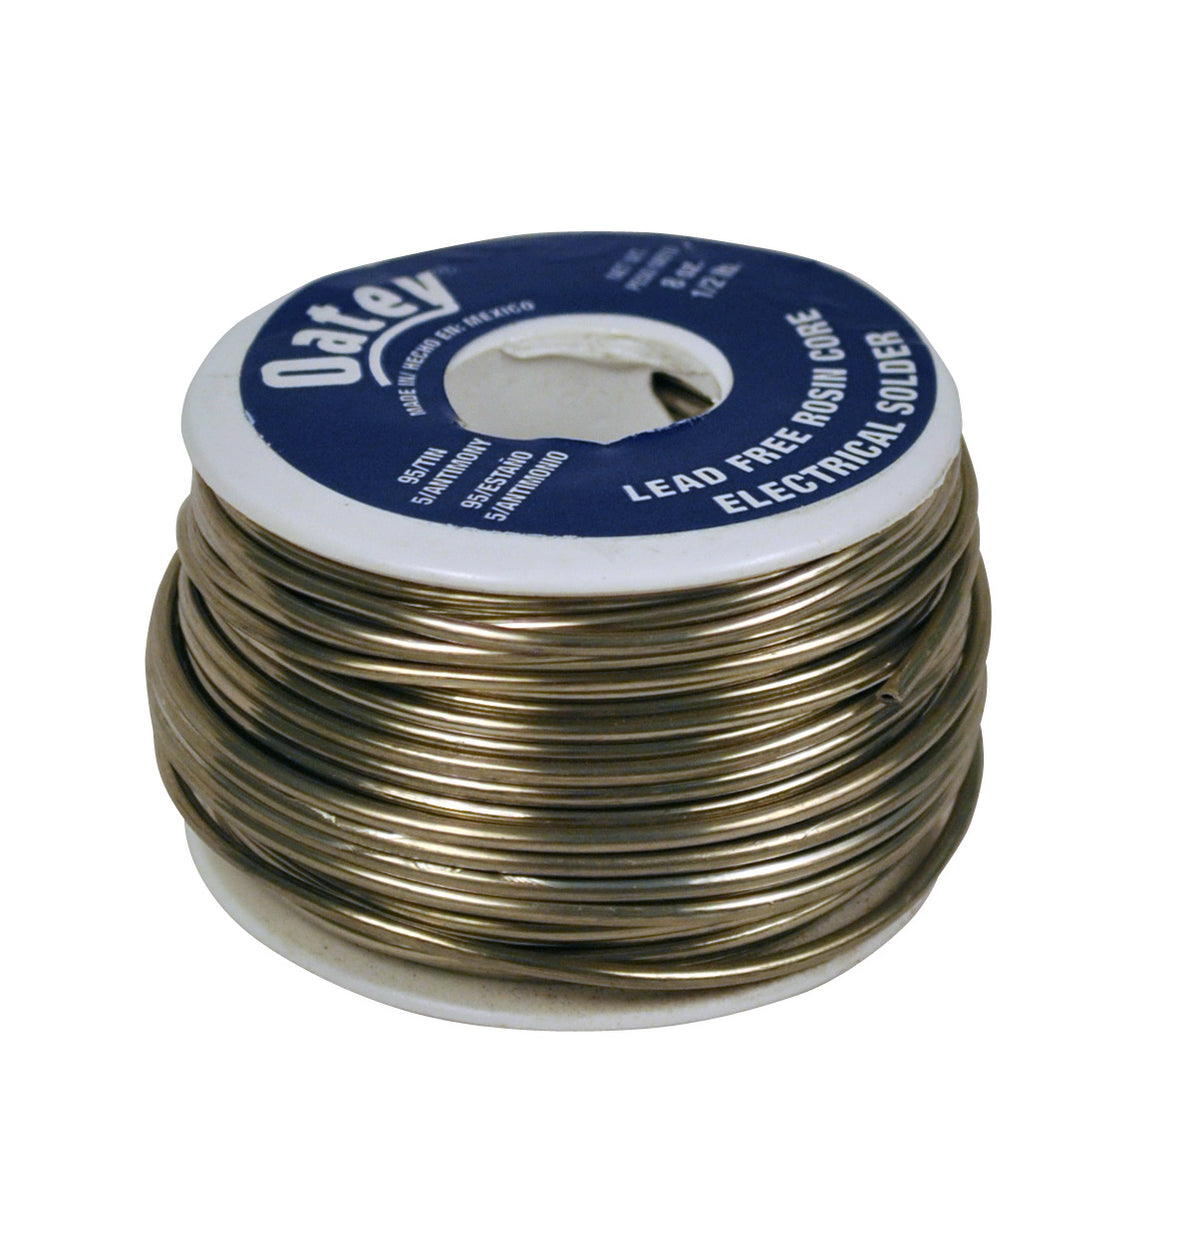 Oatey 53171 Lead-Free Rosin Core Wire Solder, 1/2 lbs